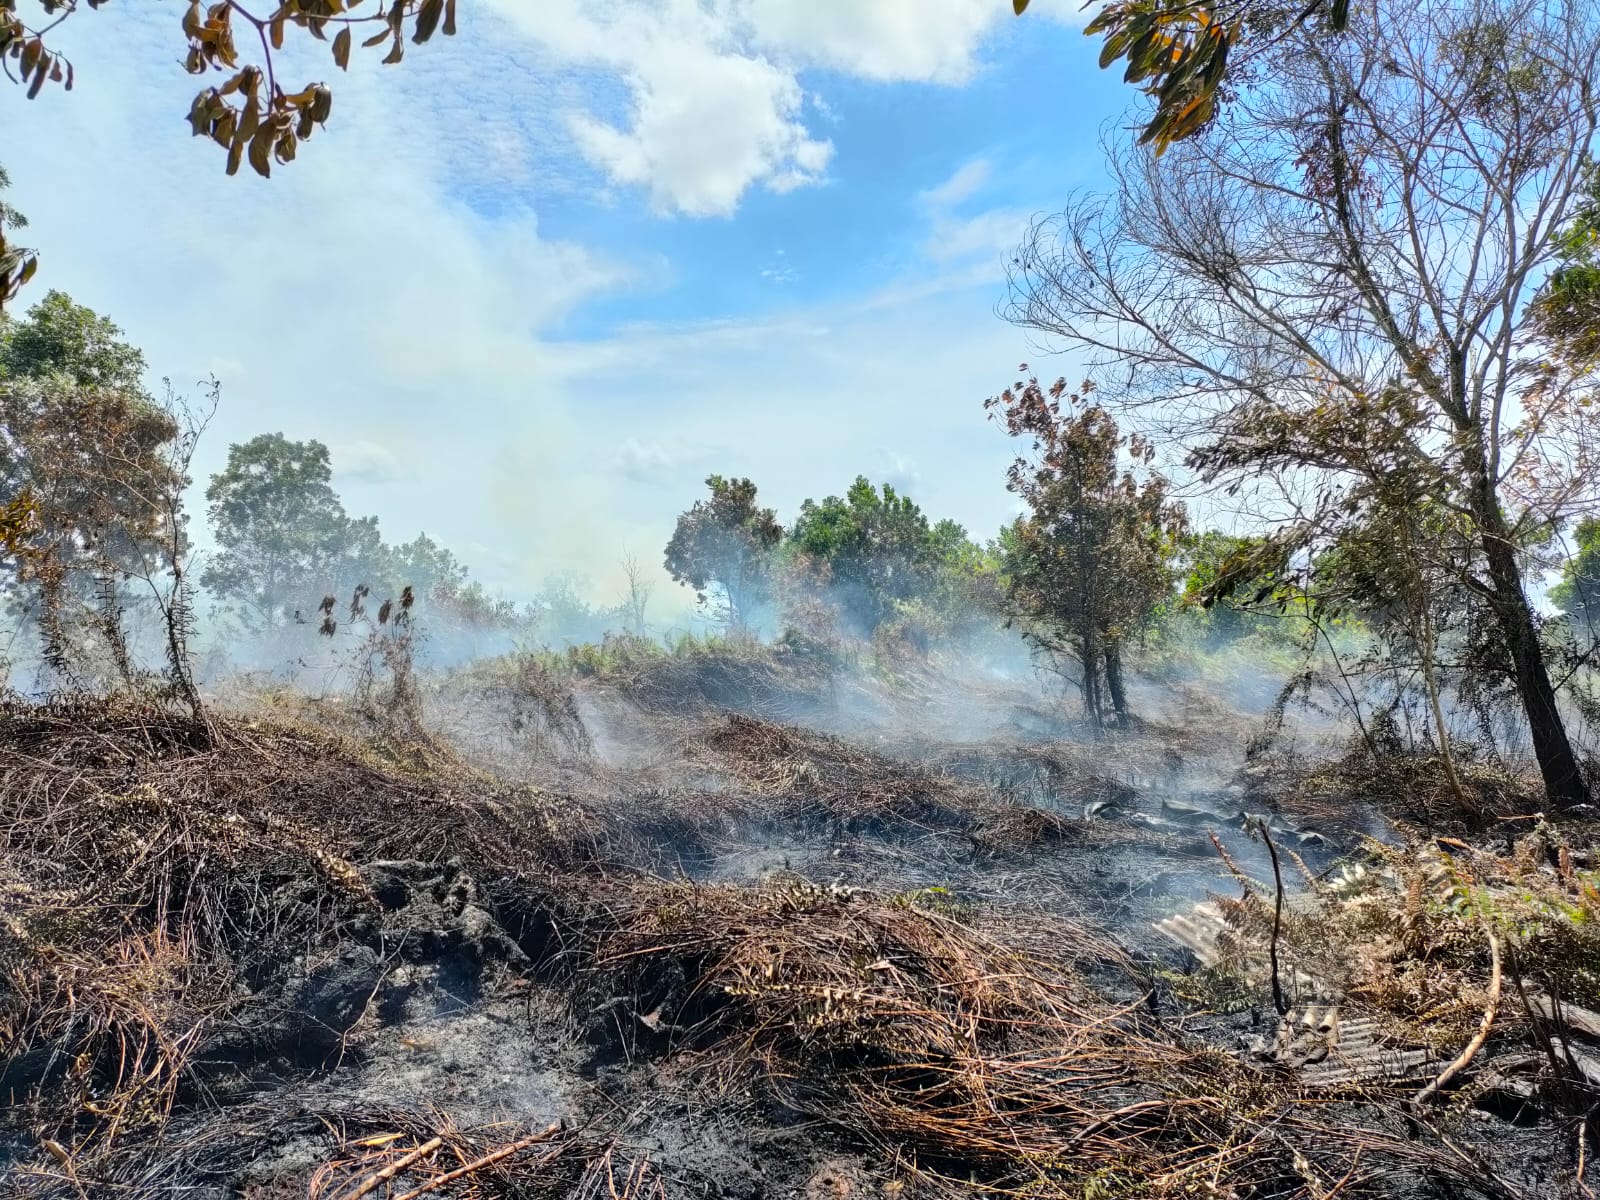 Penampakan lahan seluas dua hektare yang terbakar di Dusun Bunga Raya, RT 11 RW 07, Desa Sungai Raya Dalam, Kecamatan Sungai Raya Dalam, Kabupaten Kubu Raya. (Foto: Jauhari)